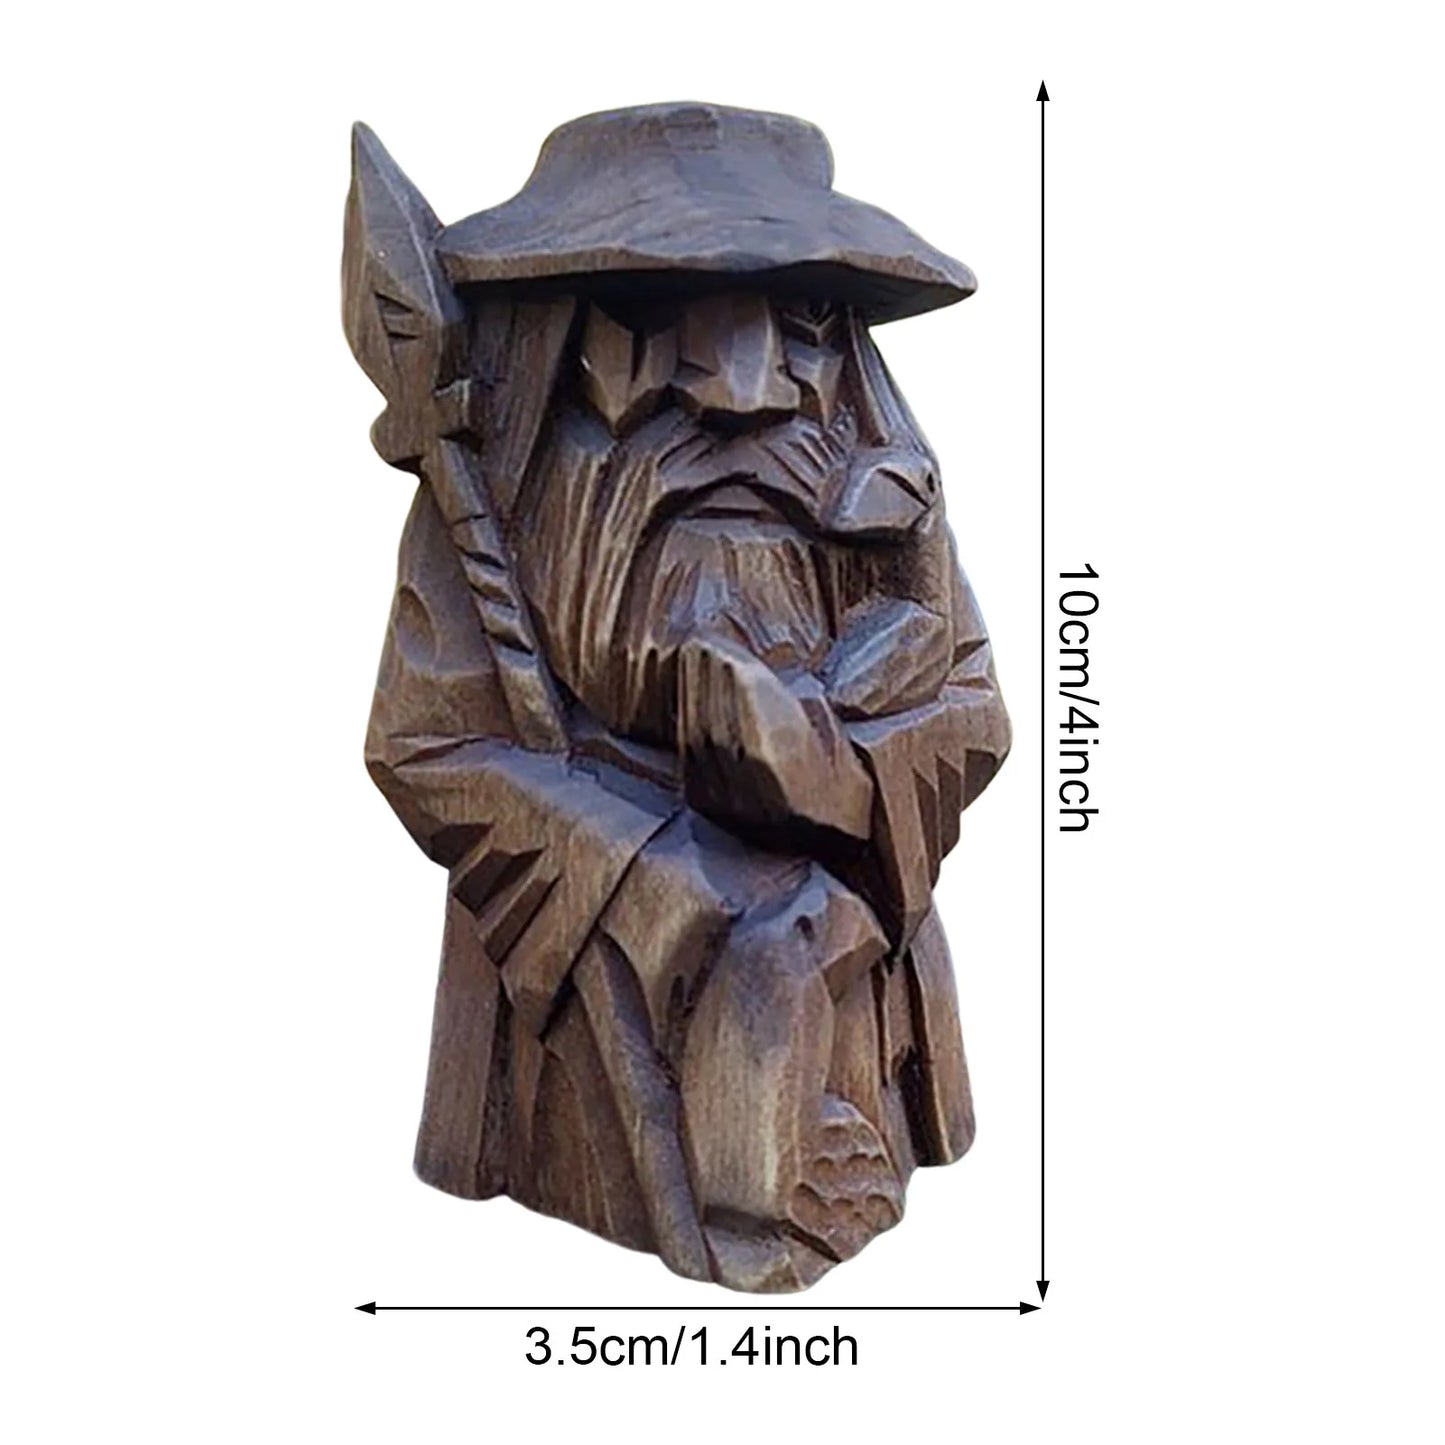 Odin Thor Tyr Ulfhednar nordische heidnische Harz-Wikinger-Statue, nordische heidnische Harz-Ornamente, Kunst für Zuhause, Outdoor, Gartendekoration